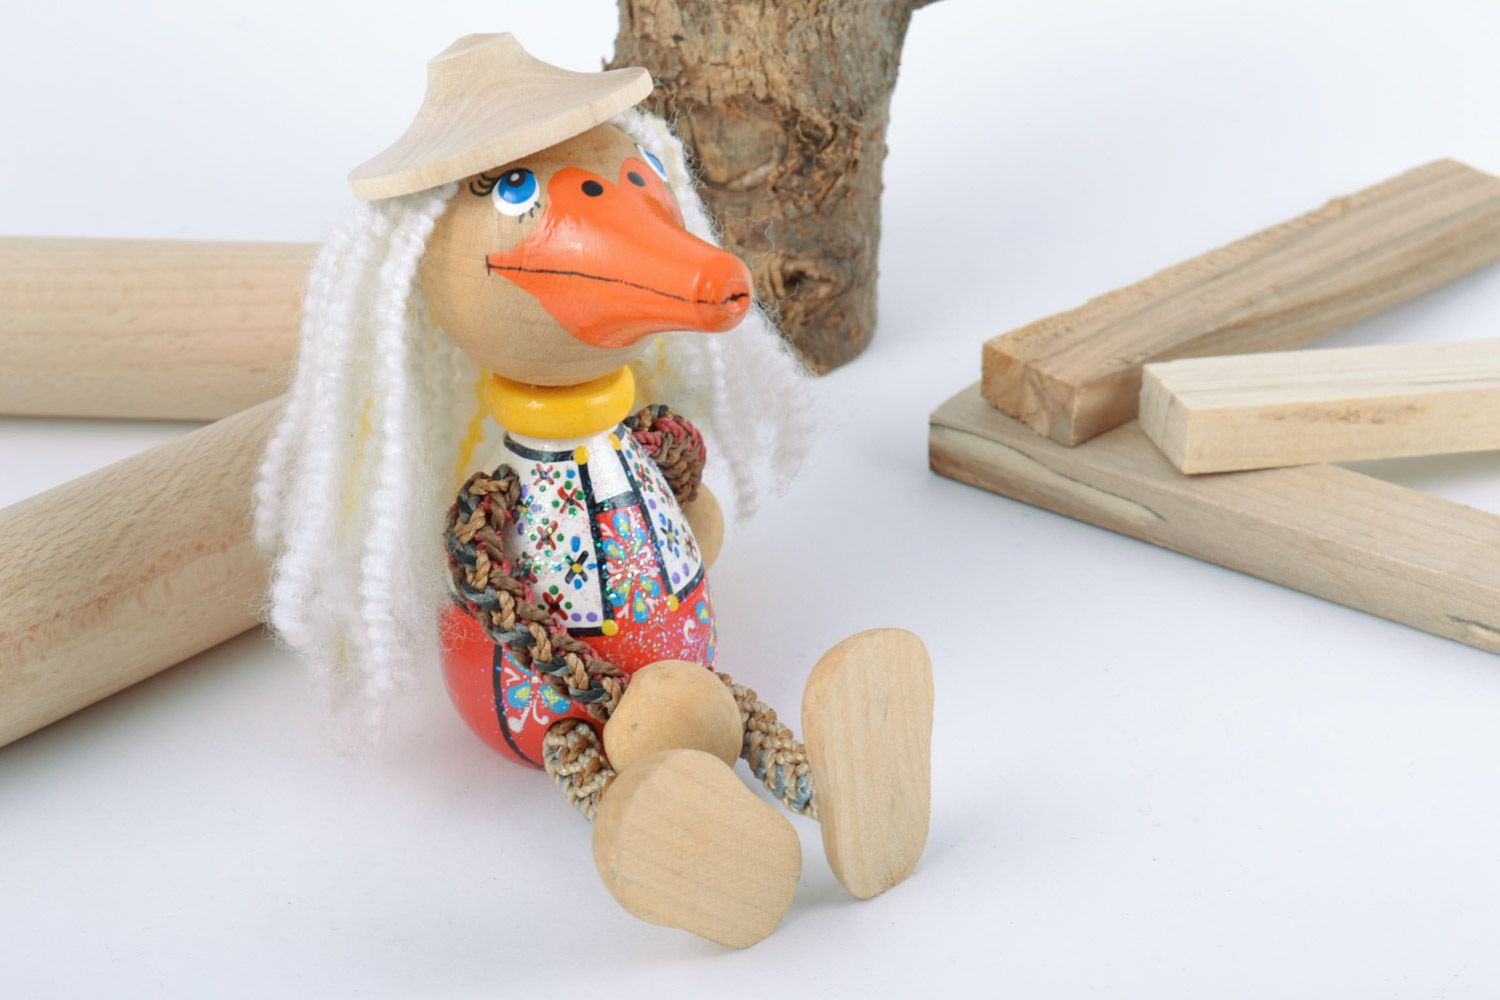 Оригинальная деревянная игрушка Утка ручной работы расписанная эко-красками фото 1